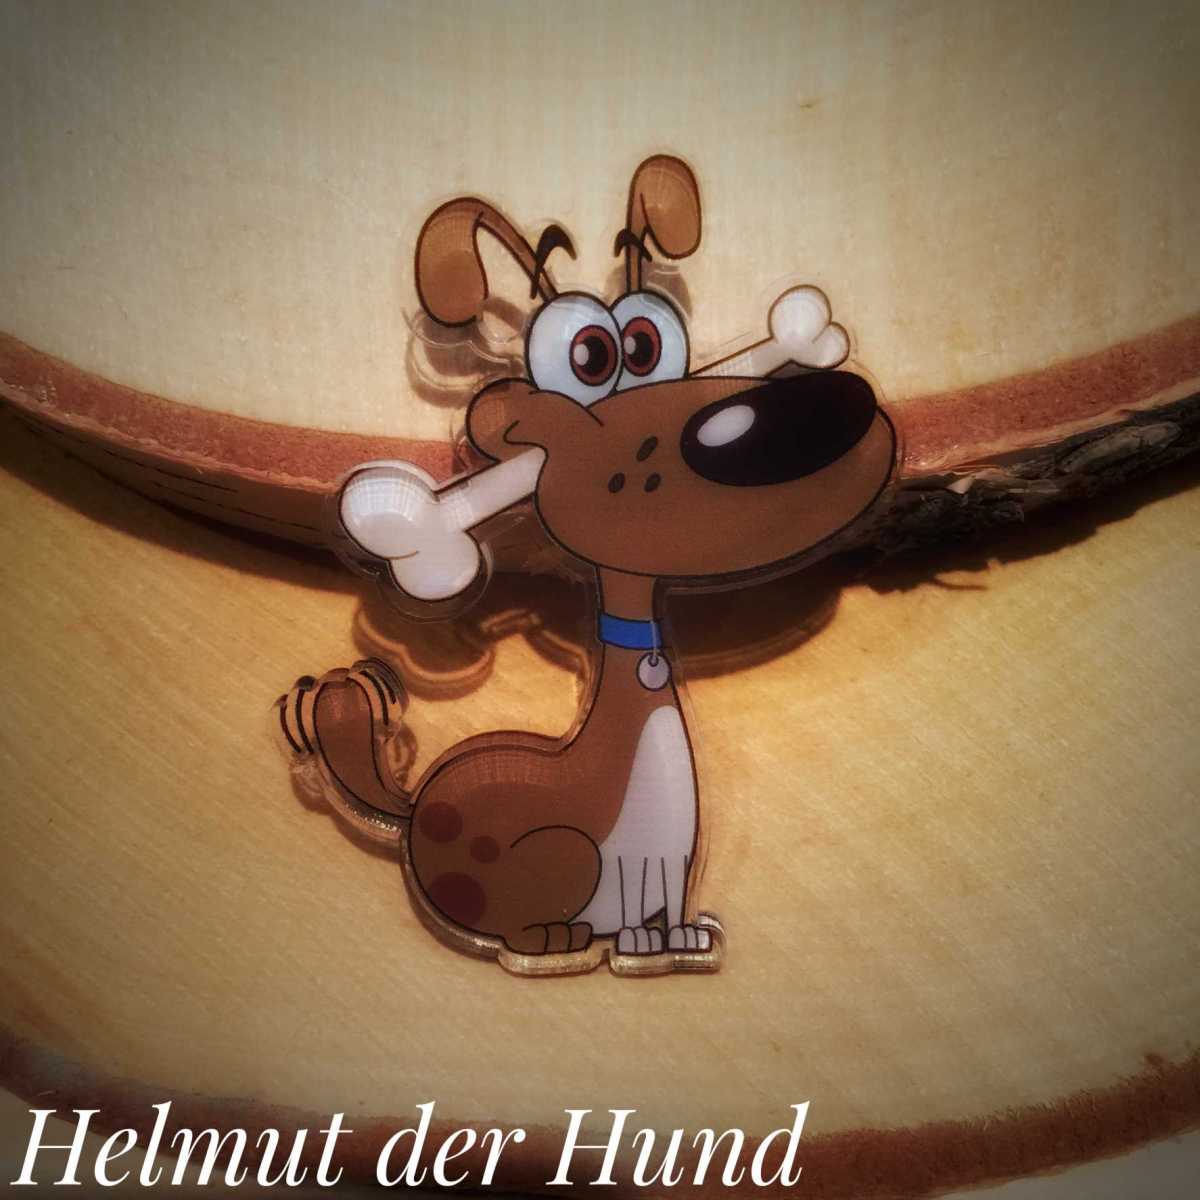 "Helmut der Hund"